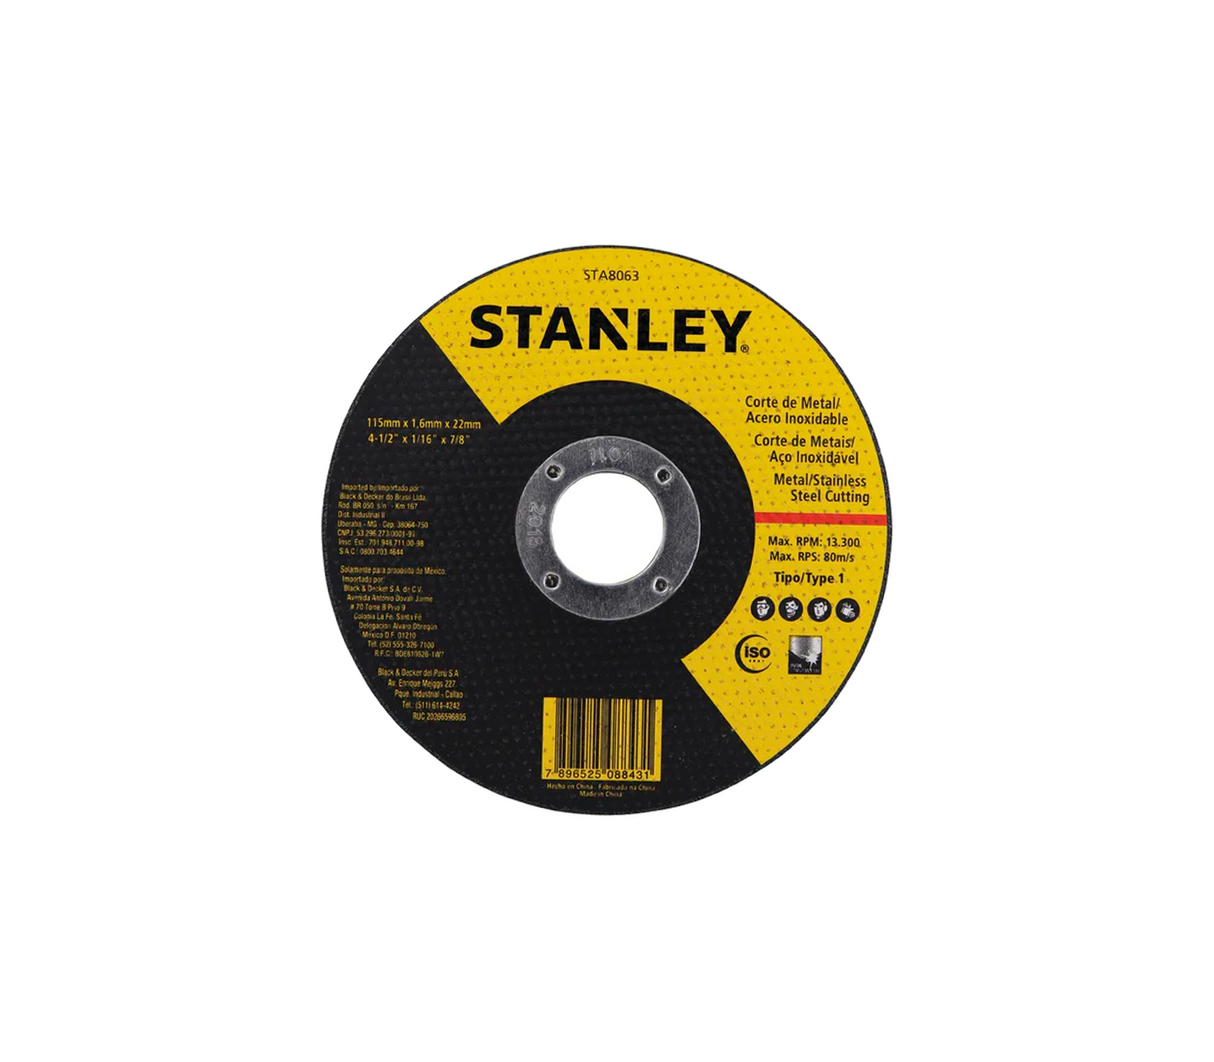 Disco metal 4-1/2 x 1/16" x 7/8" Stanley